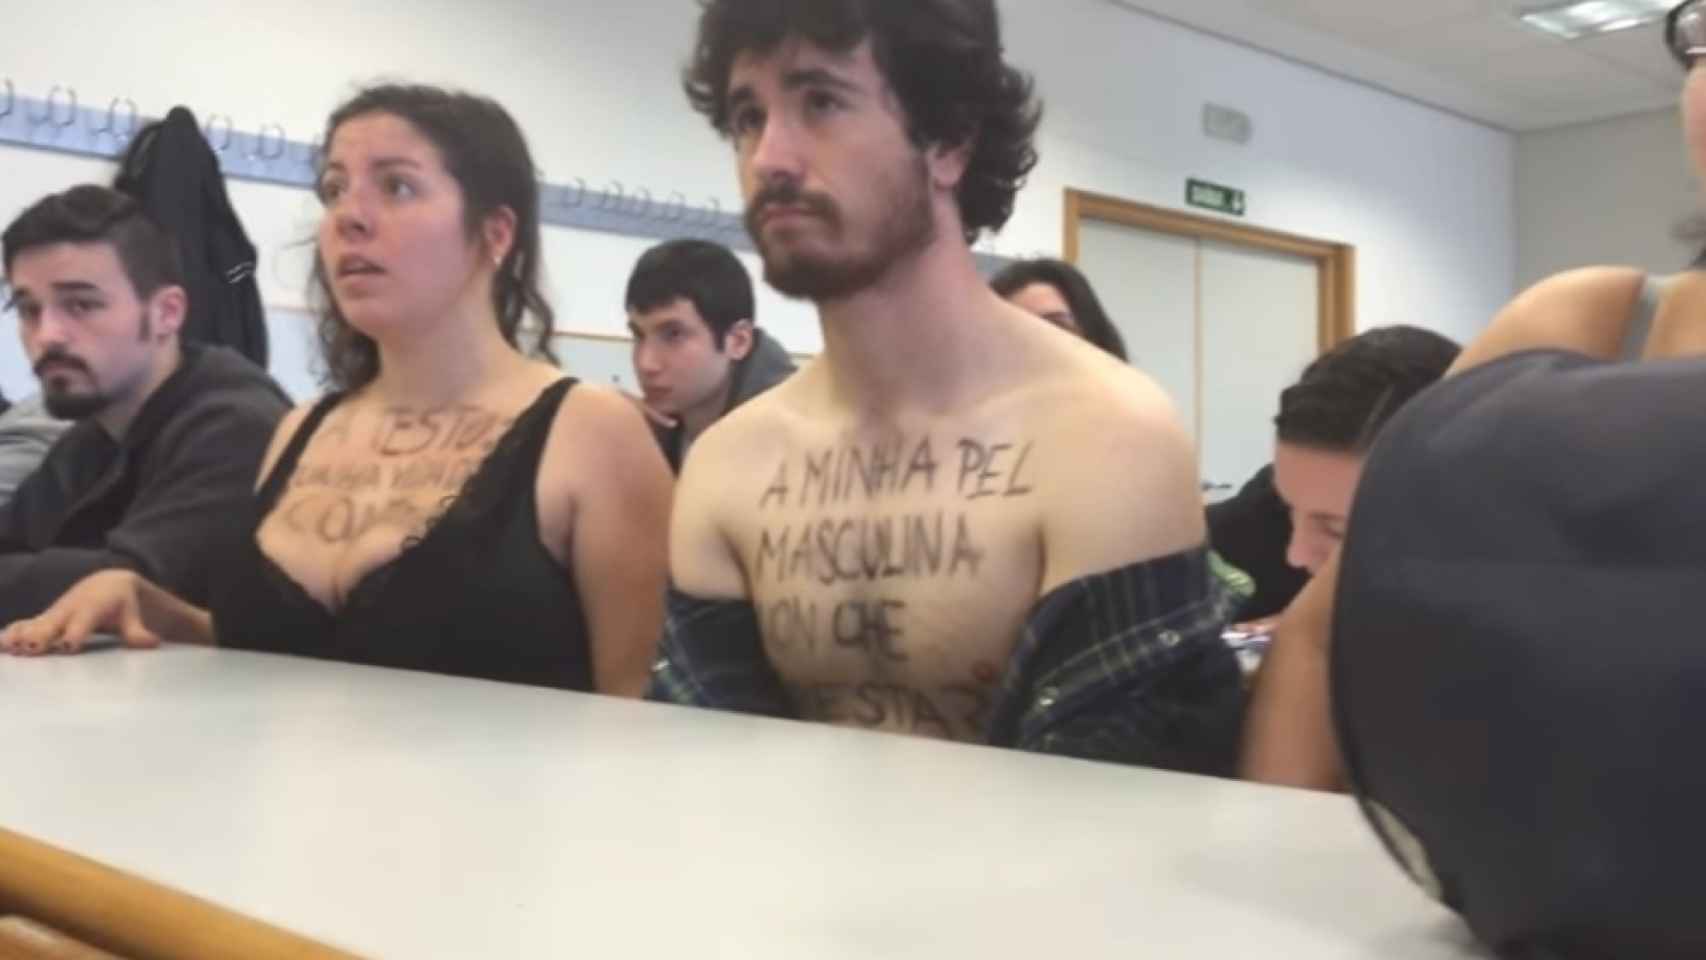 Los alumnos que protestaron en 2016 en clase de don Luciano.